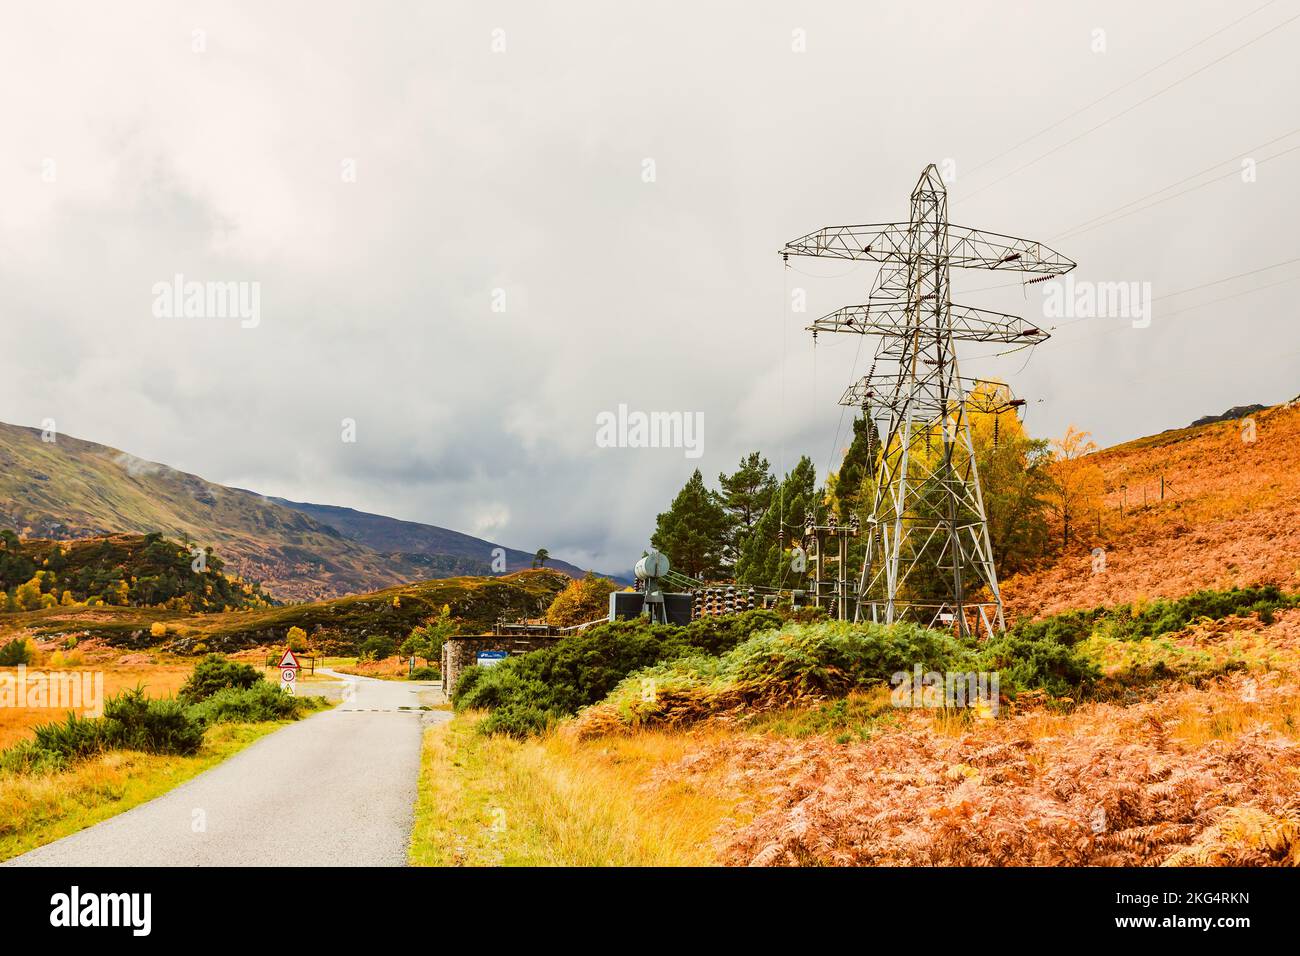 Deanie Power Station im abgelegenen Glen Strathfarrar im schottischen Hochland mit Pylon und Stromleitungen. Herbst mit goldenen Farnen. Speicherplatz kopieren. Ge Stockfoto